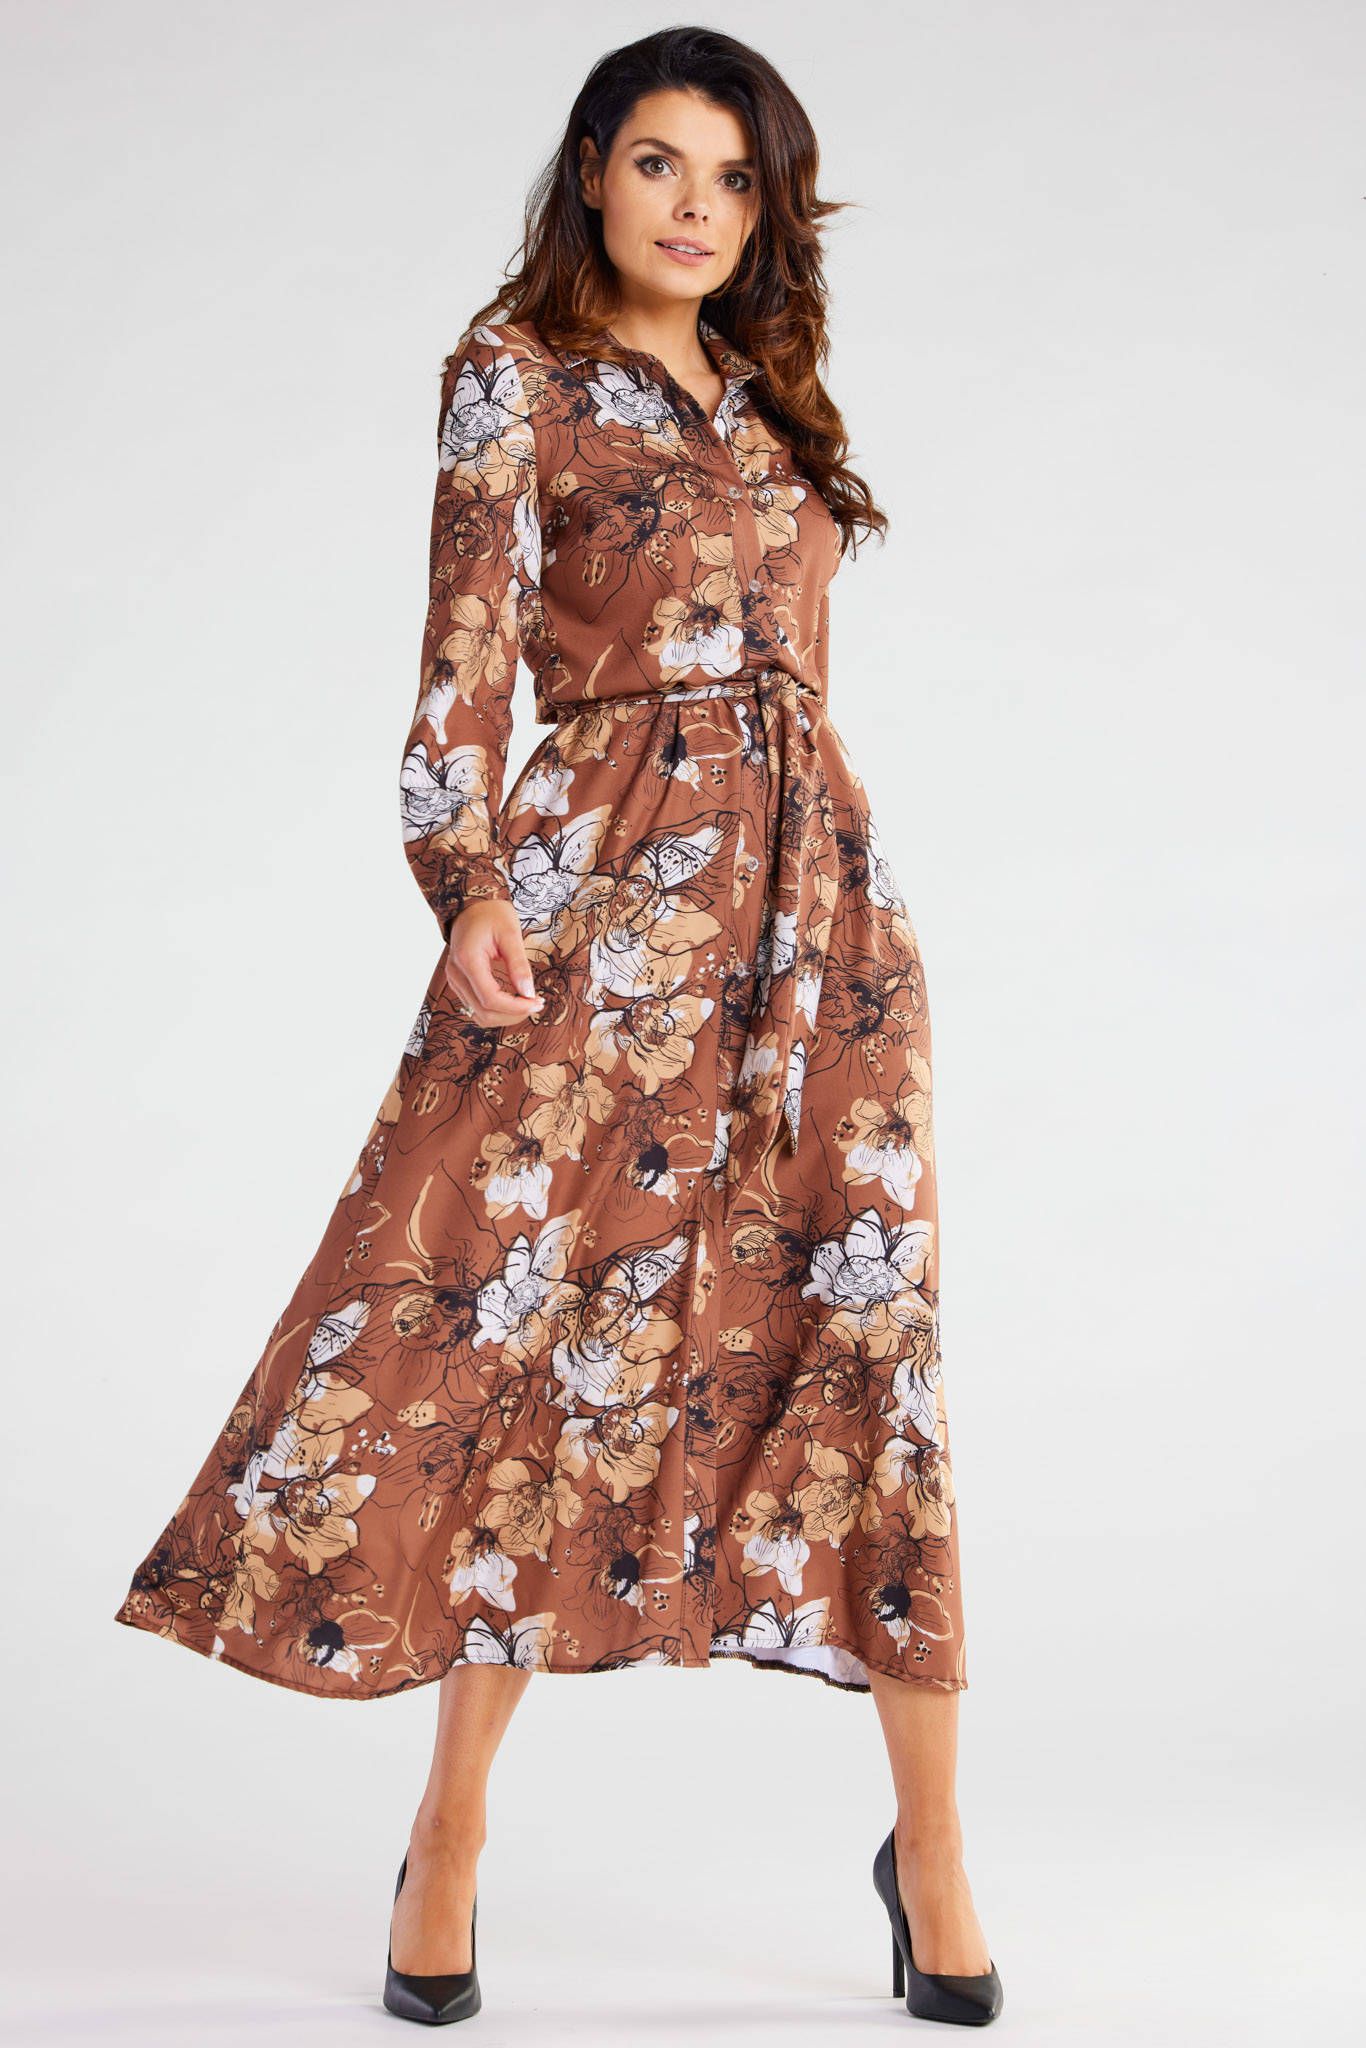 Opis: Sukienka koszulowa z długim rękawem paskiem brązowa w kwiaty.